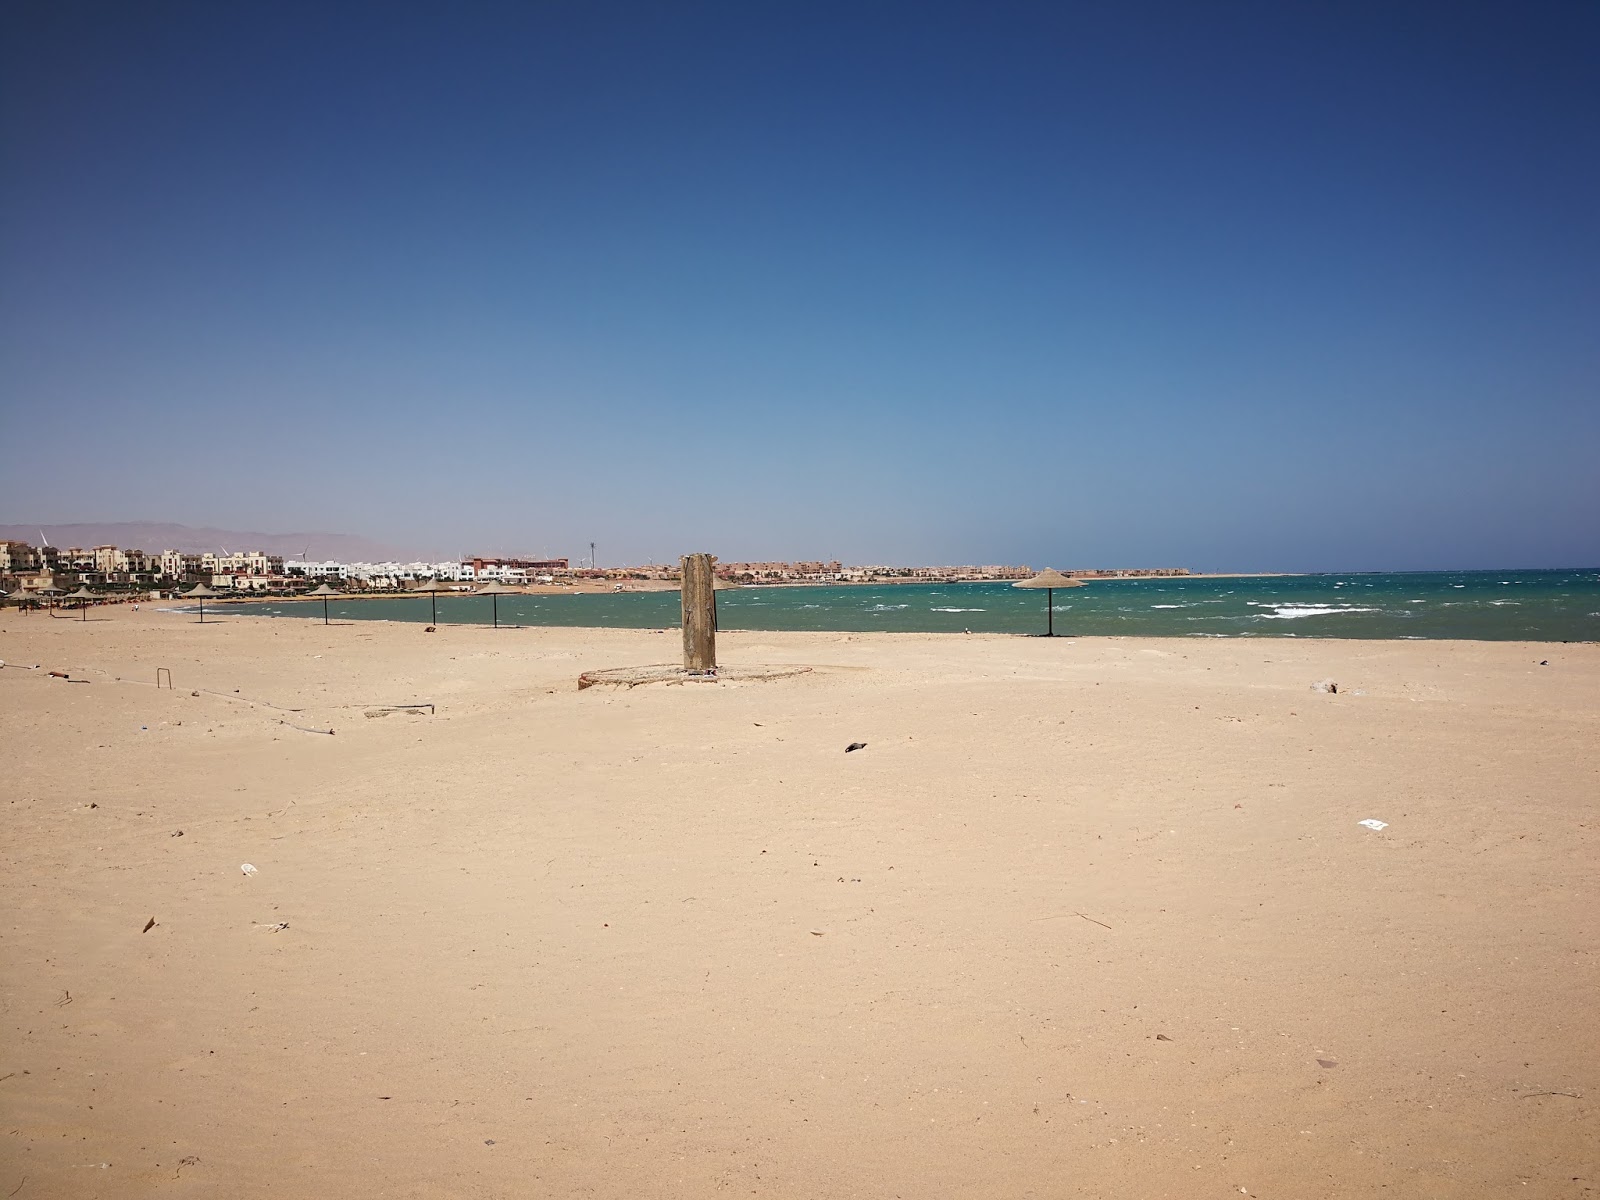 Zdjęcie La Serena Beach - popularne miejsce wśród znawców relaksu